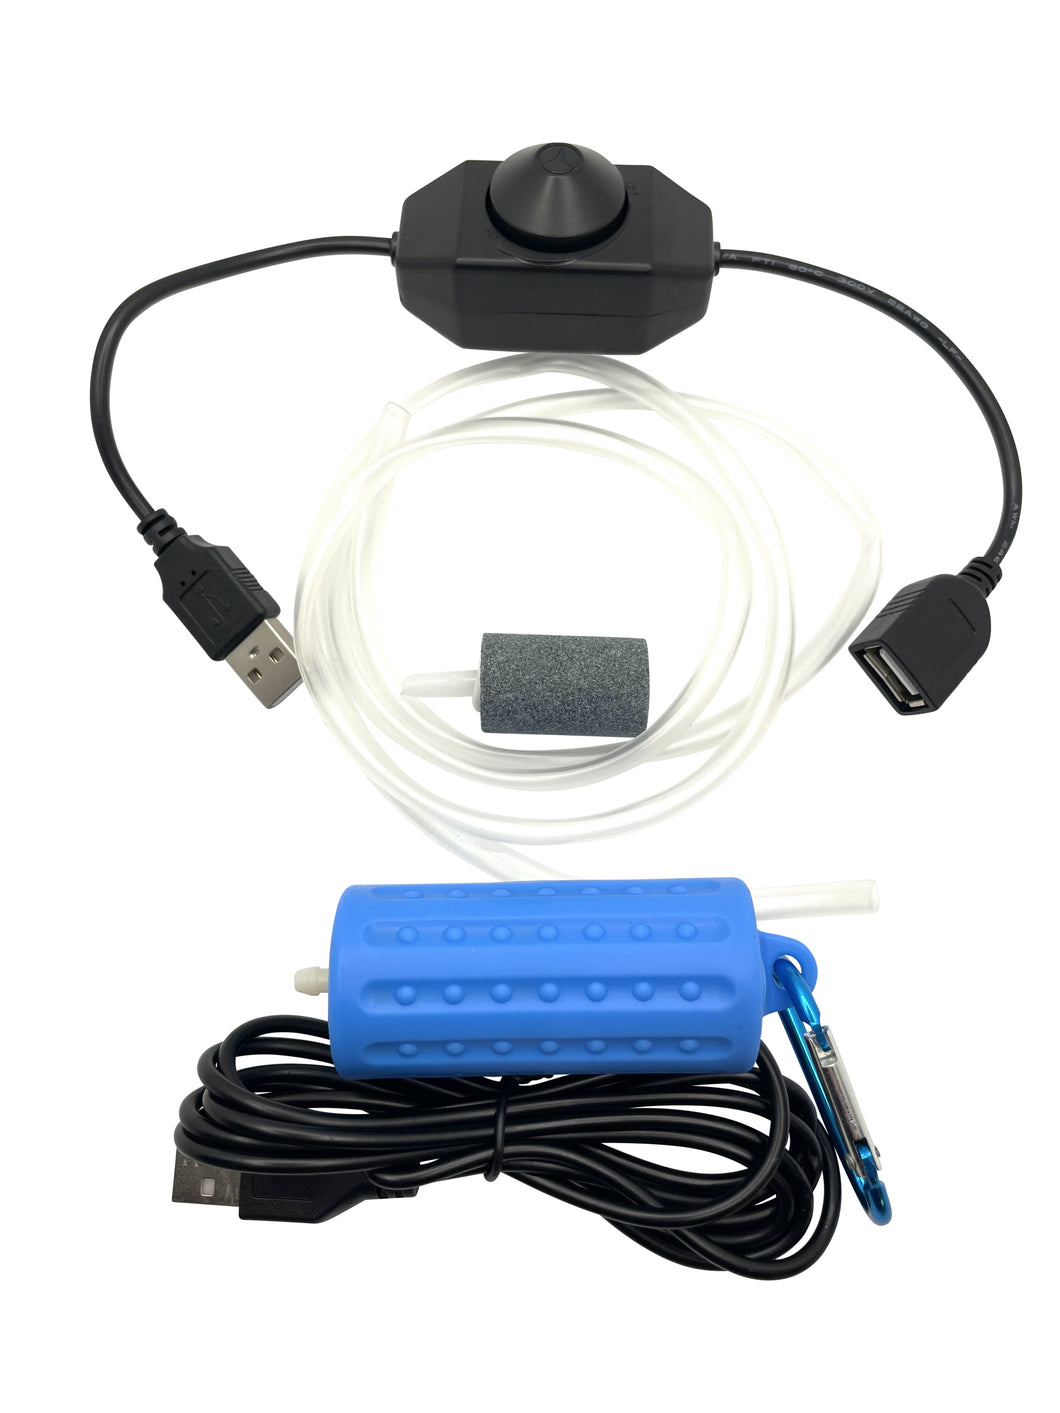 Silent USB Aquarium Pump | Throttle Switch | Airstone & Tube | Aeration Kit | For 5 Gallon Aquarium